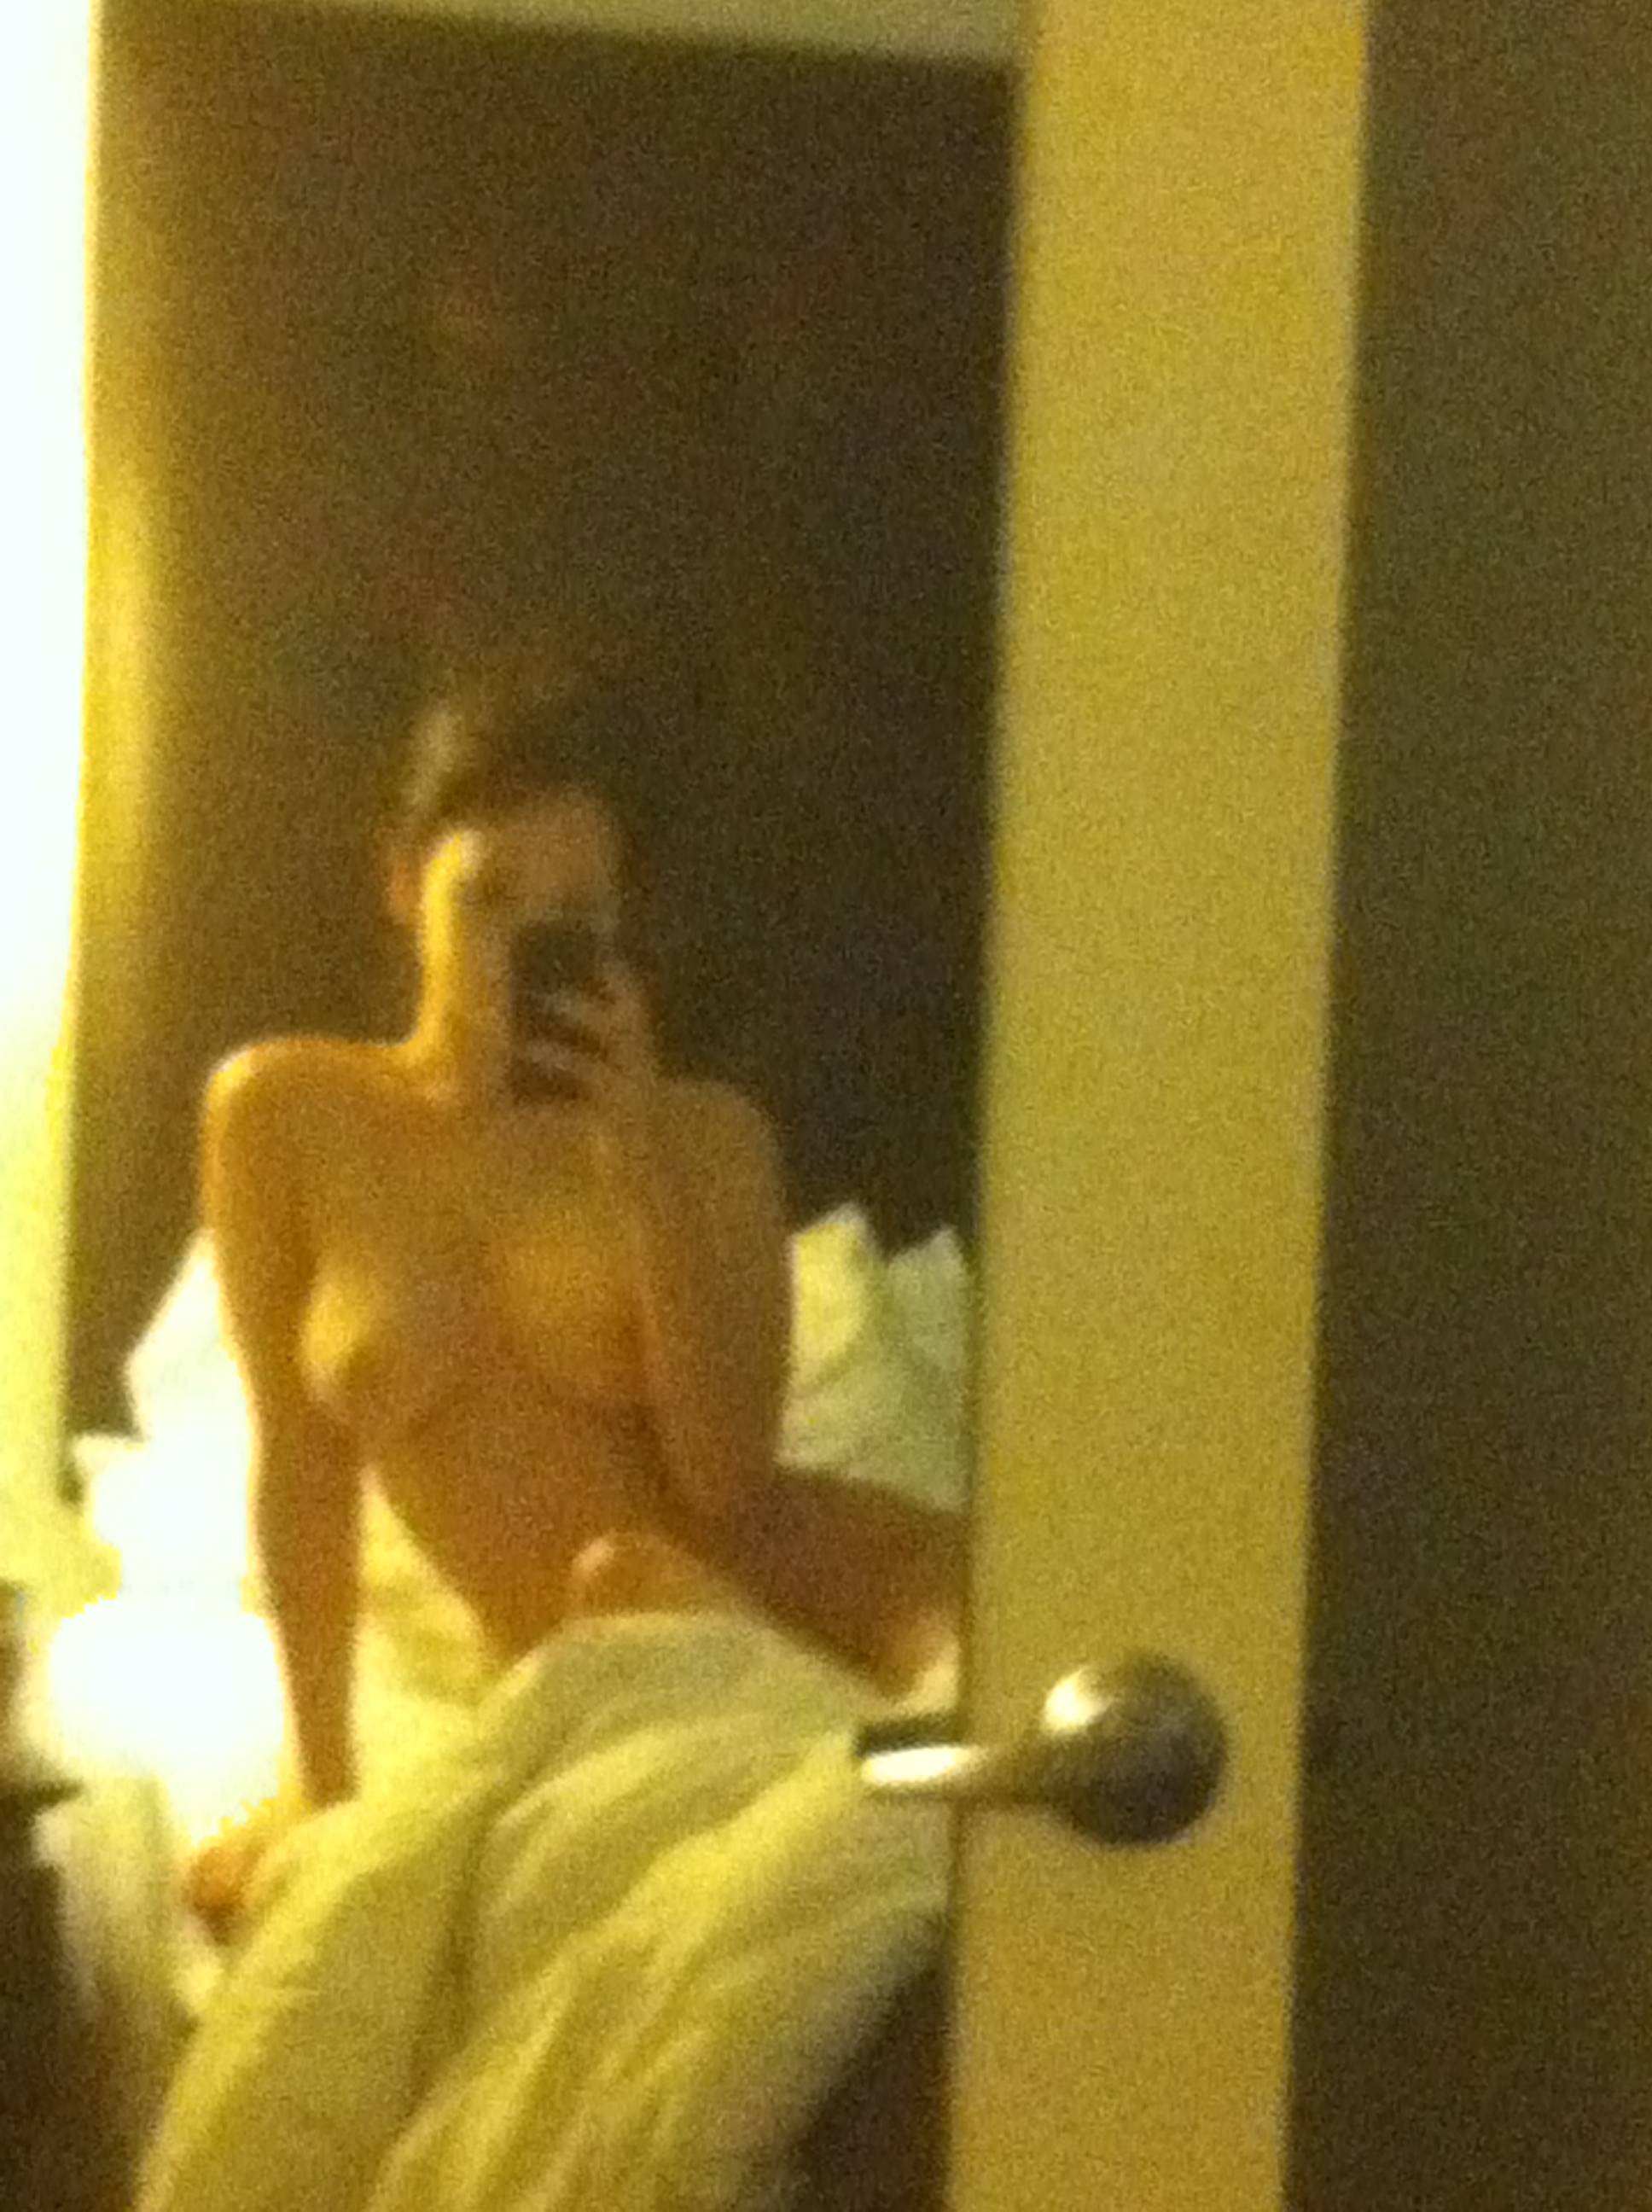 Дженифер Лоуренс nude pics.